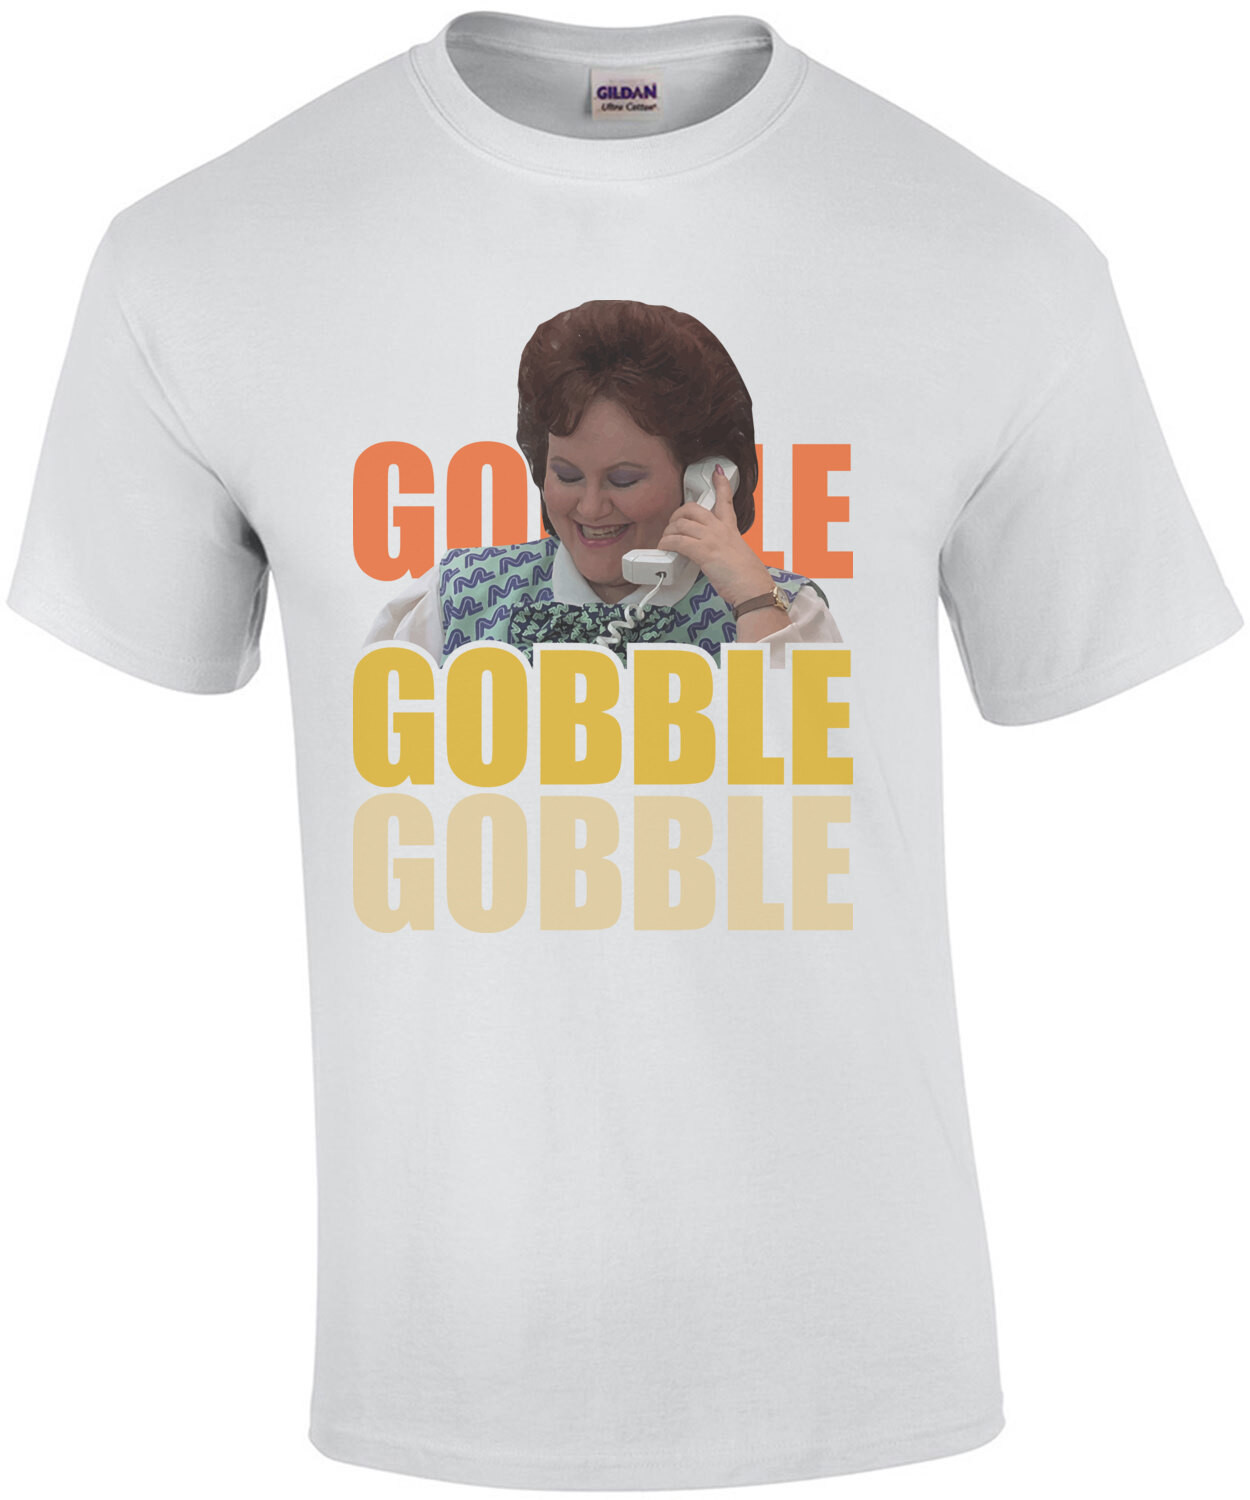 Gobble Gobble Gobble - Planes Trains & Automobiles 80's T-Shirt